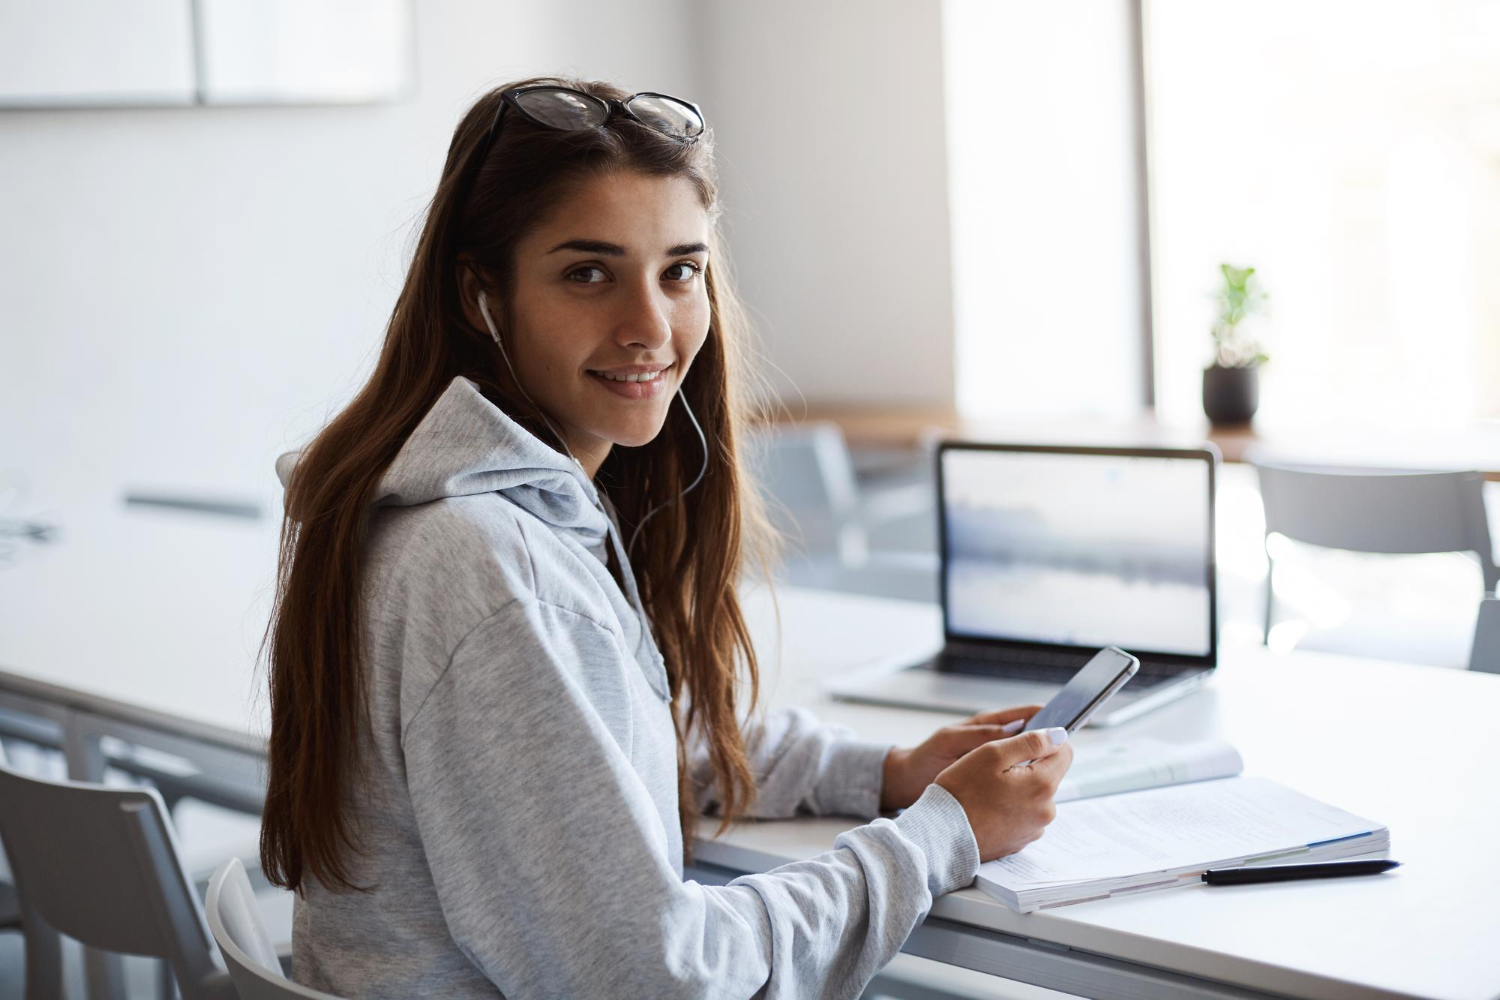 Etudiante souriante travaillant sur un ordinateur portable.